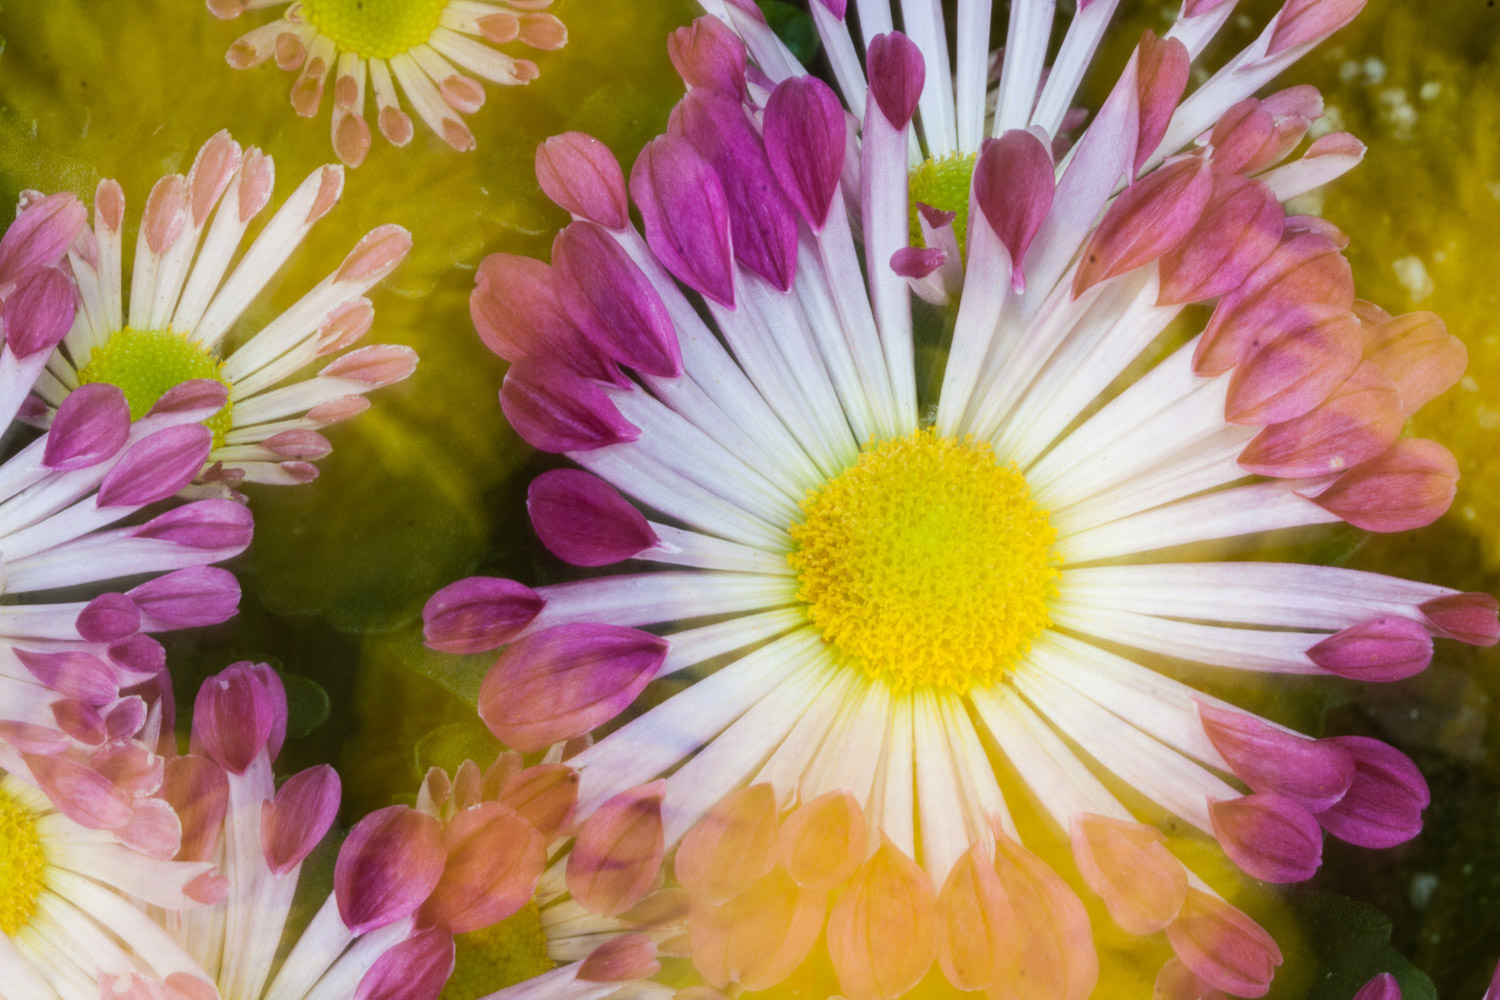 花瓣末端为粉红色的白色花